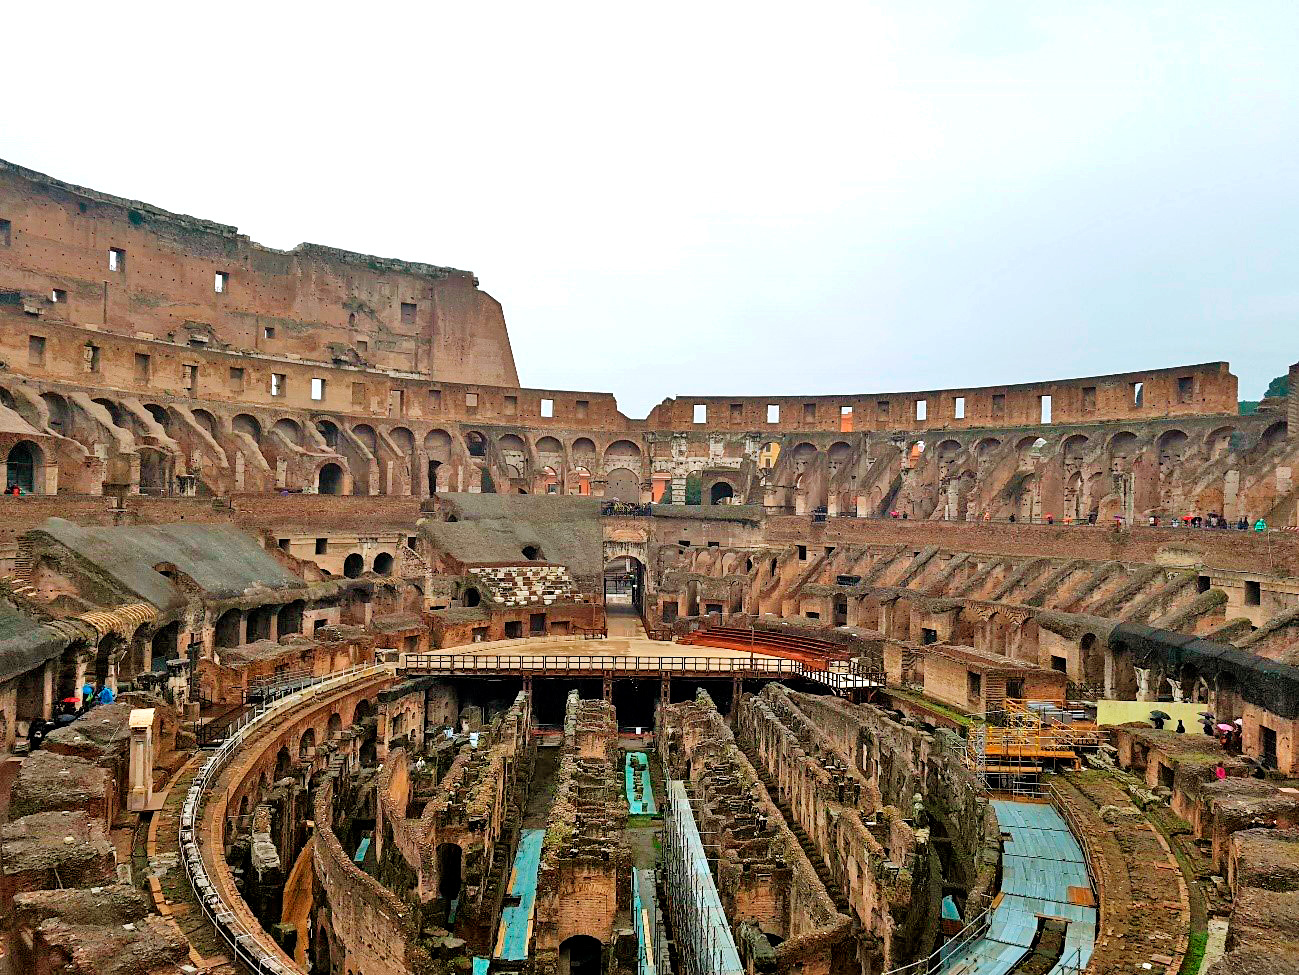 Vista do Coliseu (ao fundo é possível ver um pedaço da arena)